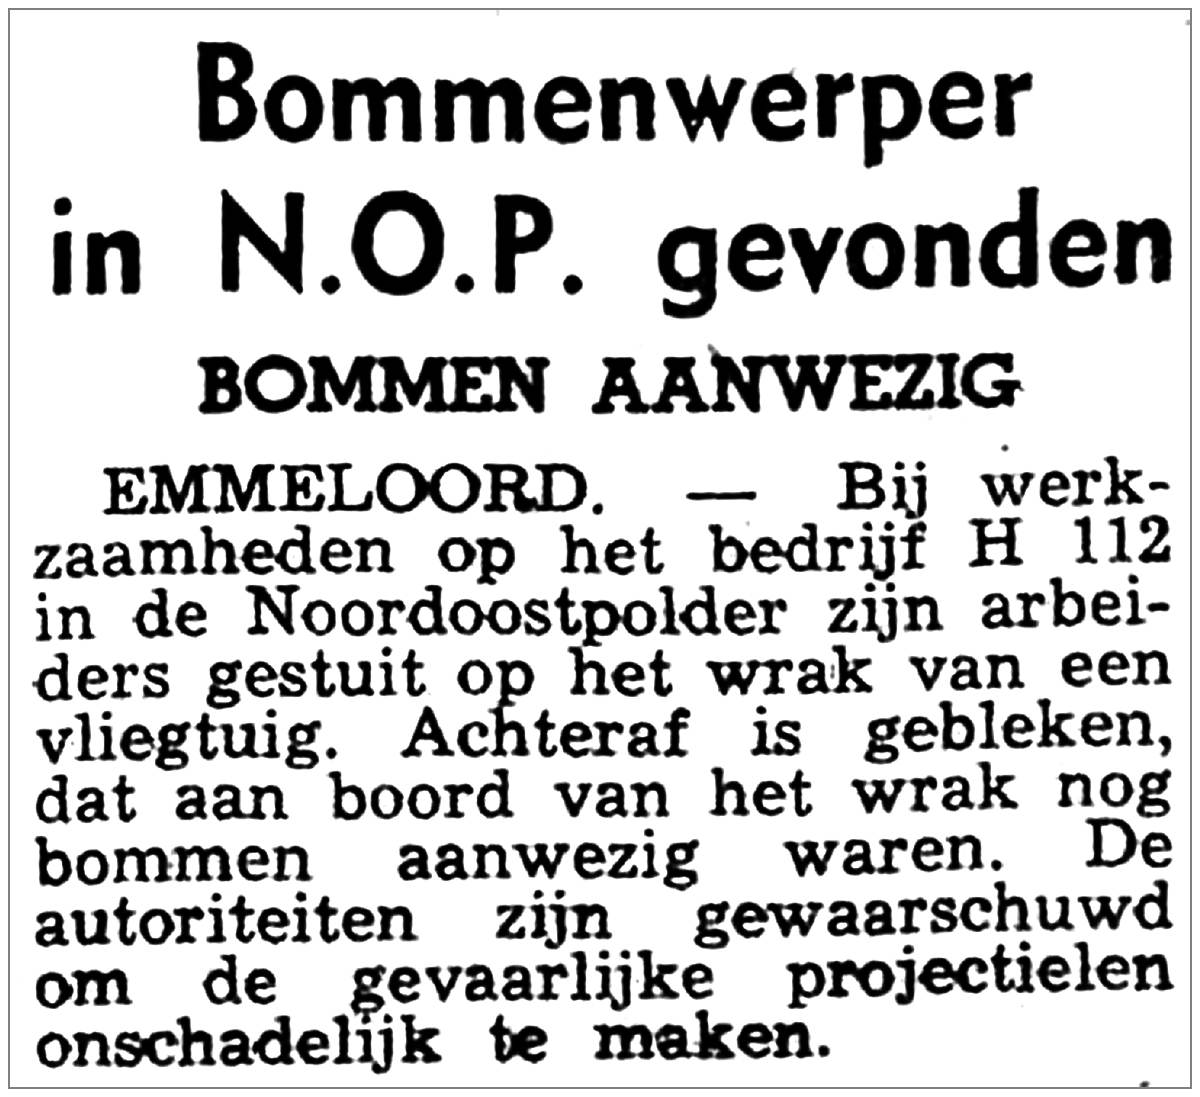 28 Aug 1952 - Overijssels Dagblad - Salvage English bomber - Urkerweg